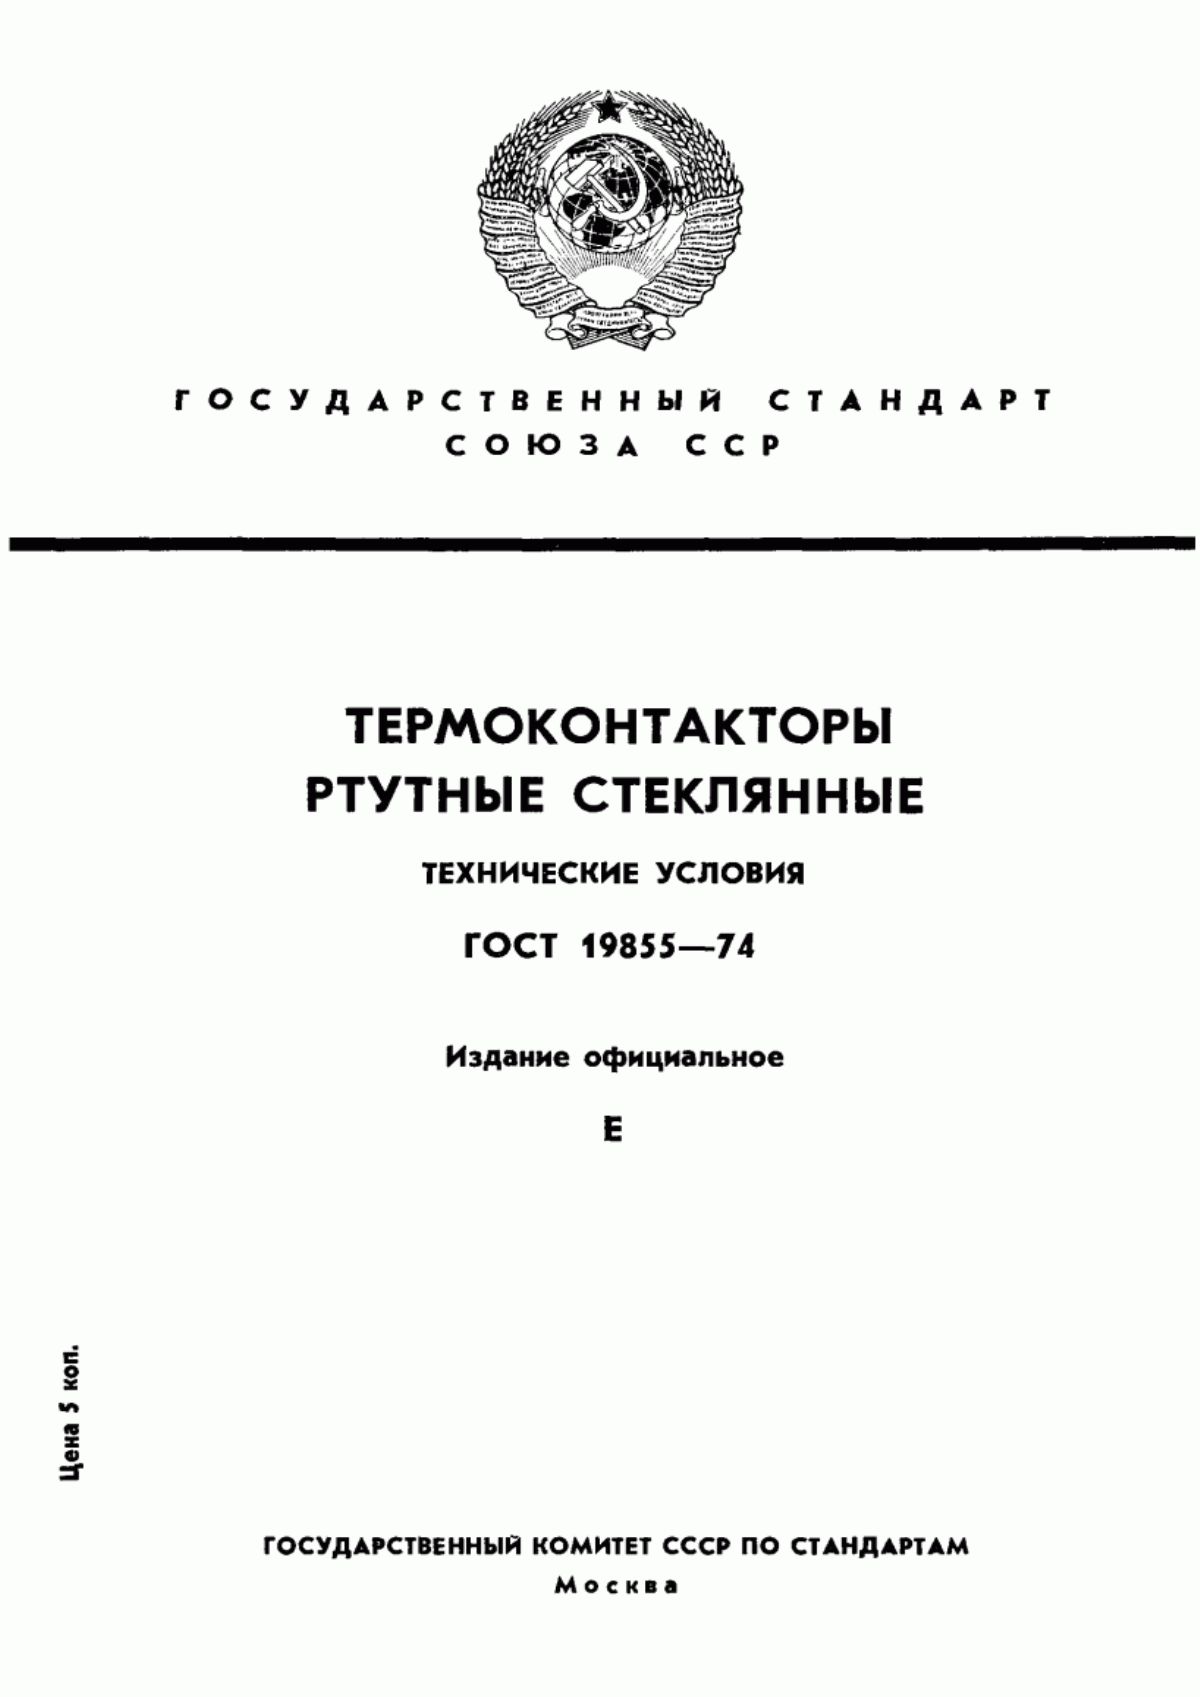 ГОСТ 19855-74 Термоконтакторы ртутные стеклянные. Технические условия